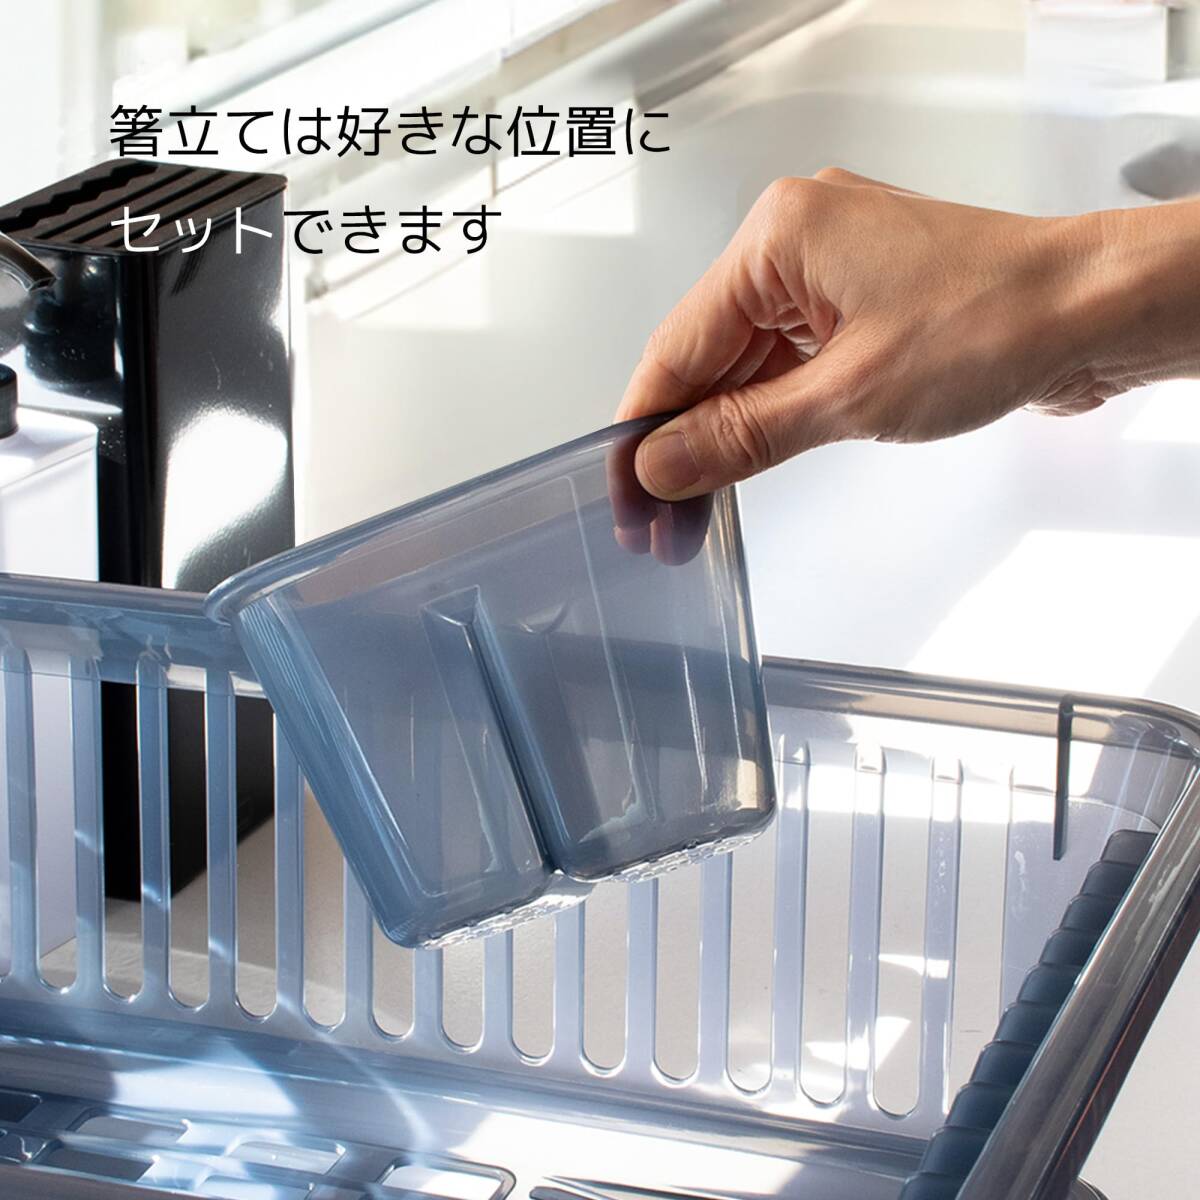 サンコープラスチック 日本製 水切りかご 皿立て水切り 流 No.1 縦型 箸立て付き ネイビーブルー_画像7